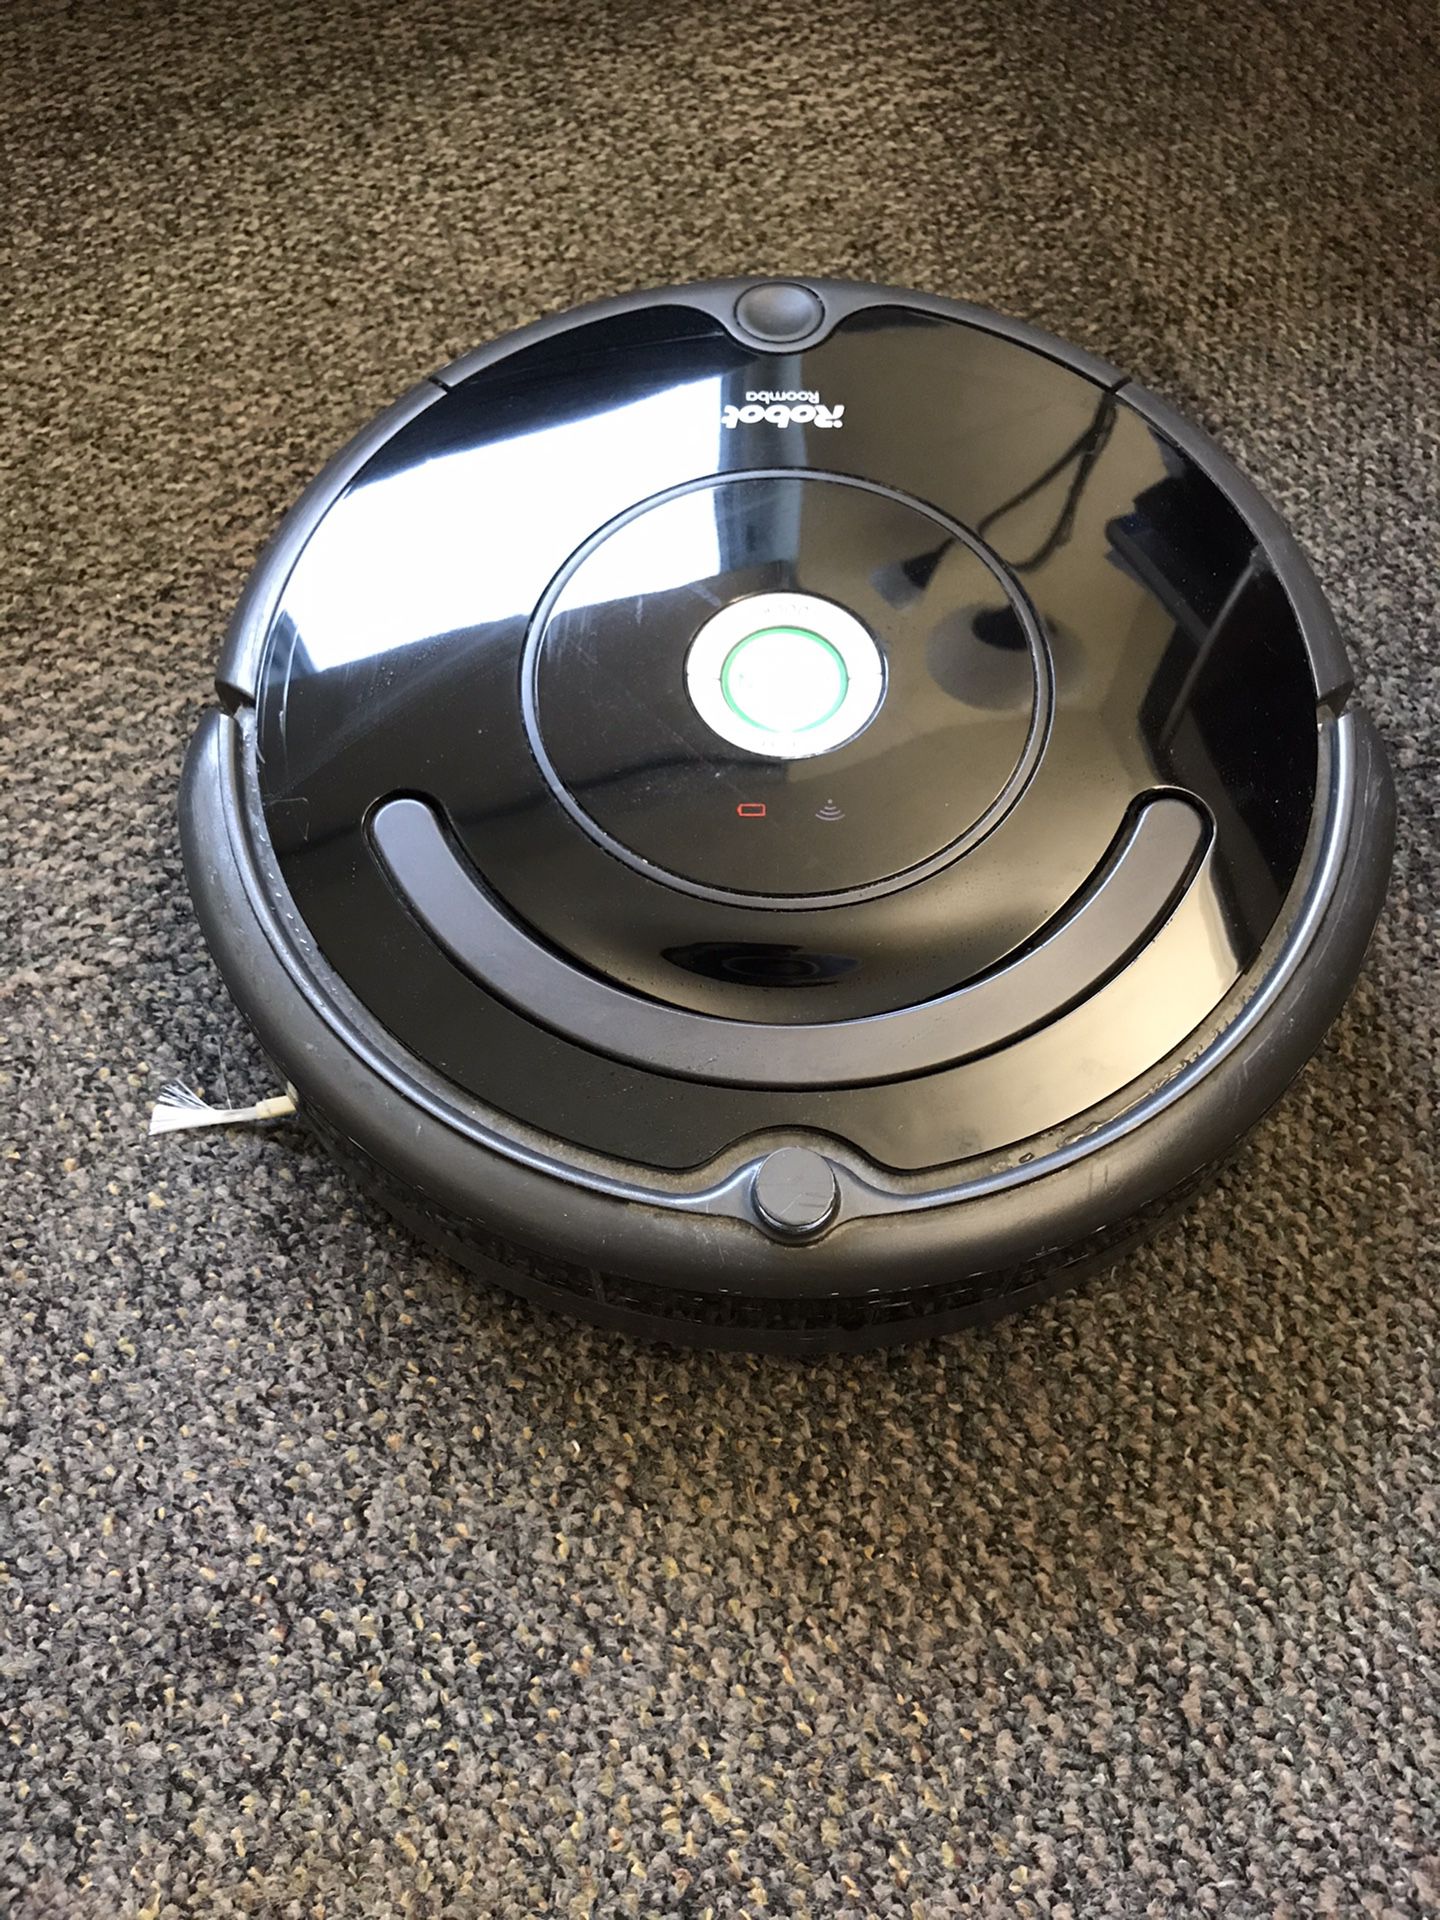 iRobot vacuum cleaner